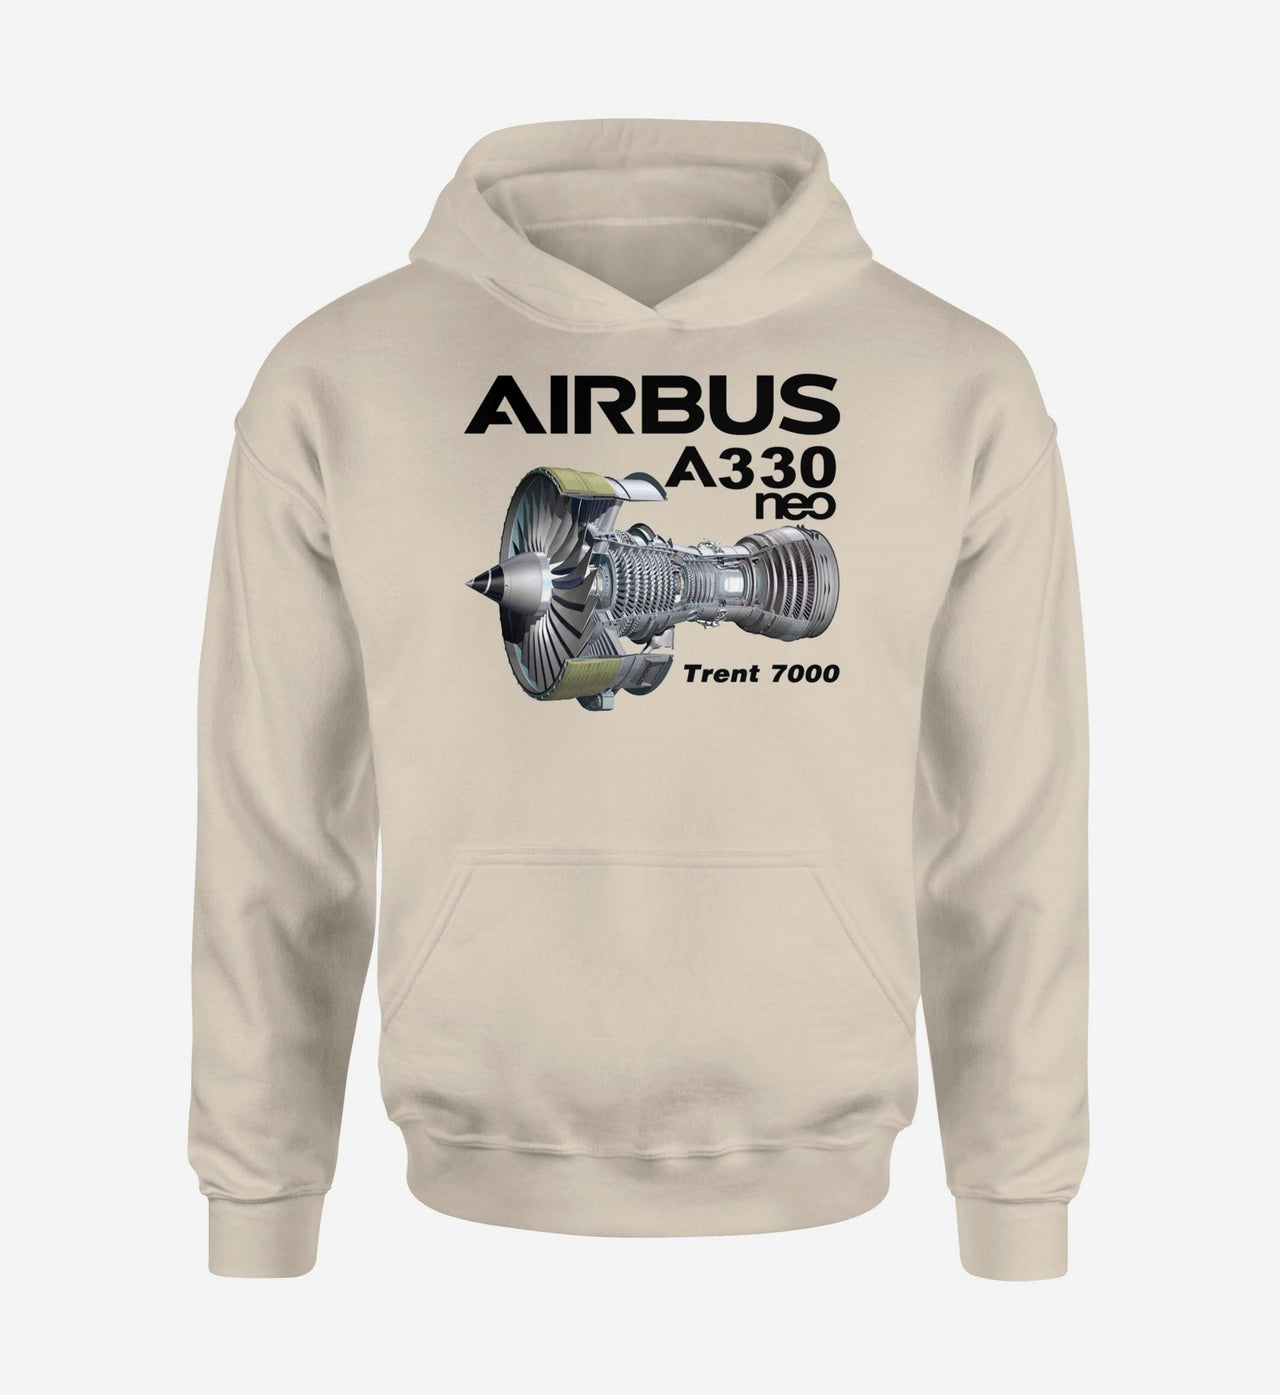 Airbus A330neo & Trent 7000 Designed Hoodies